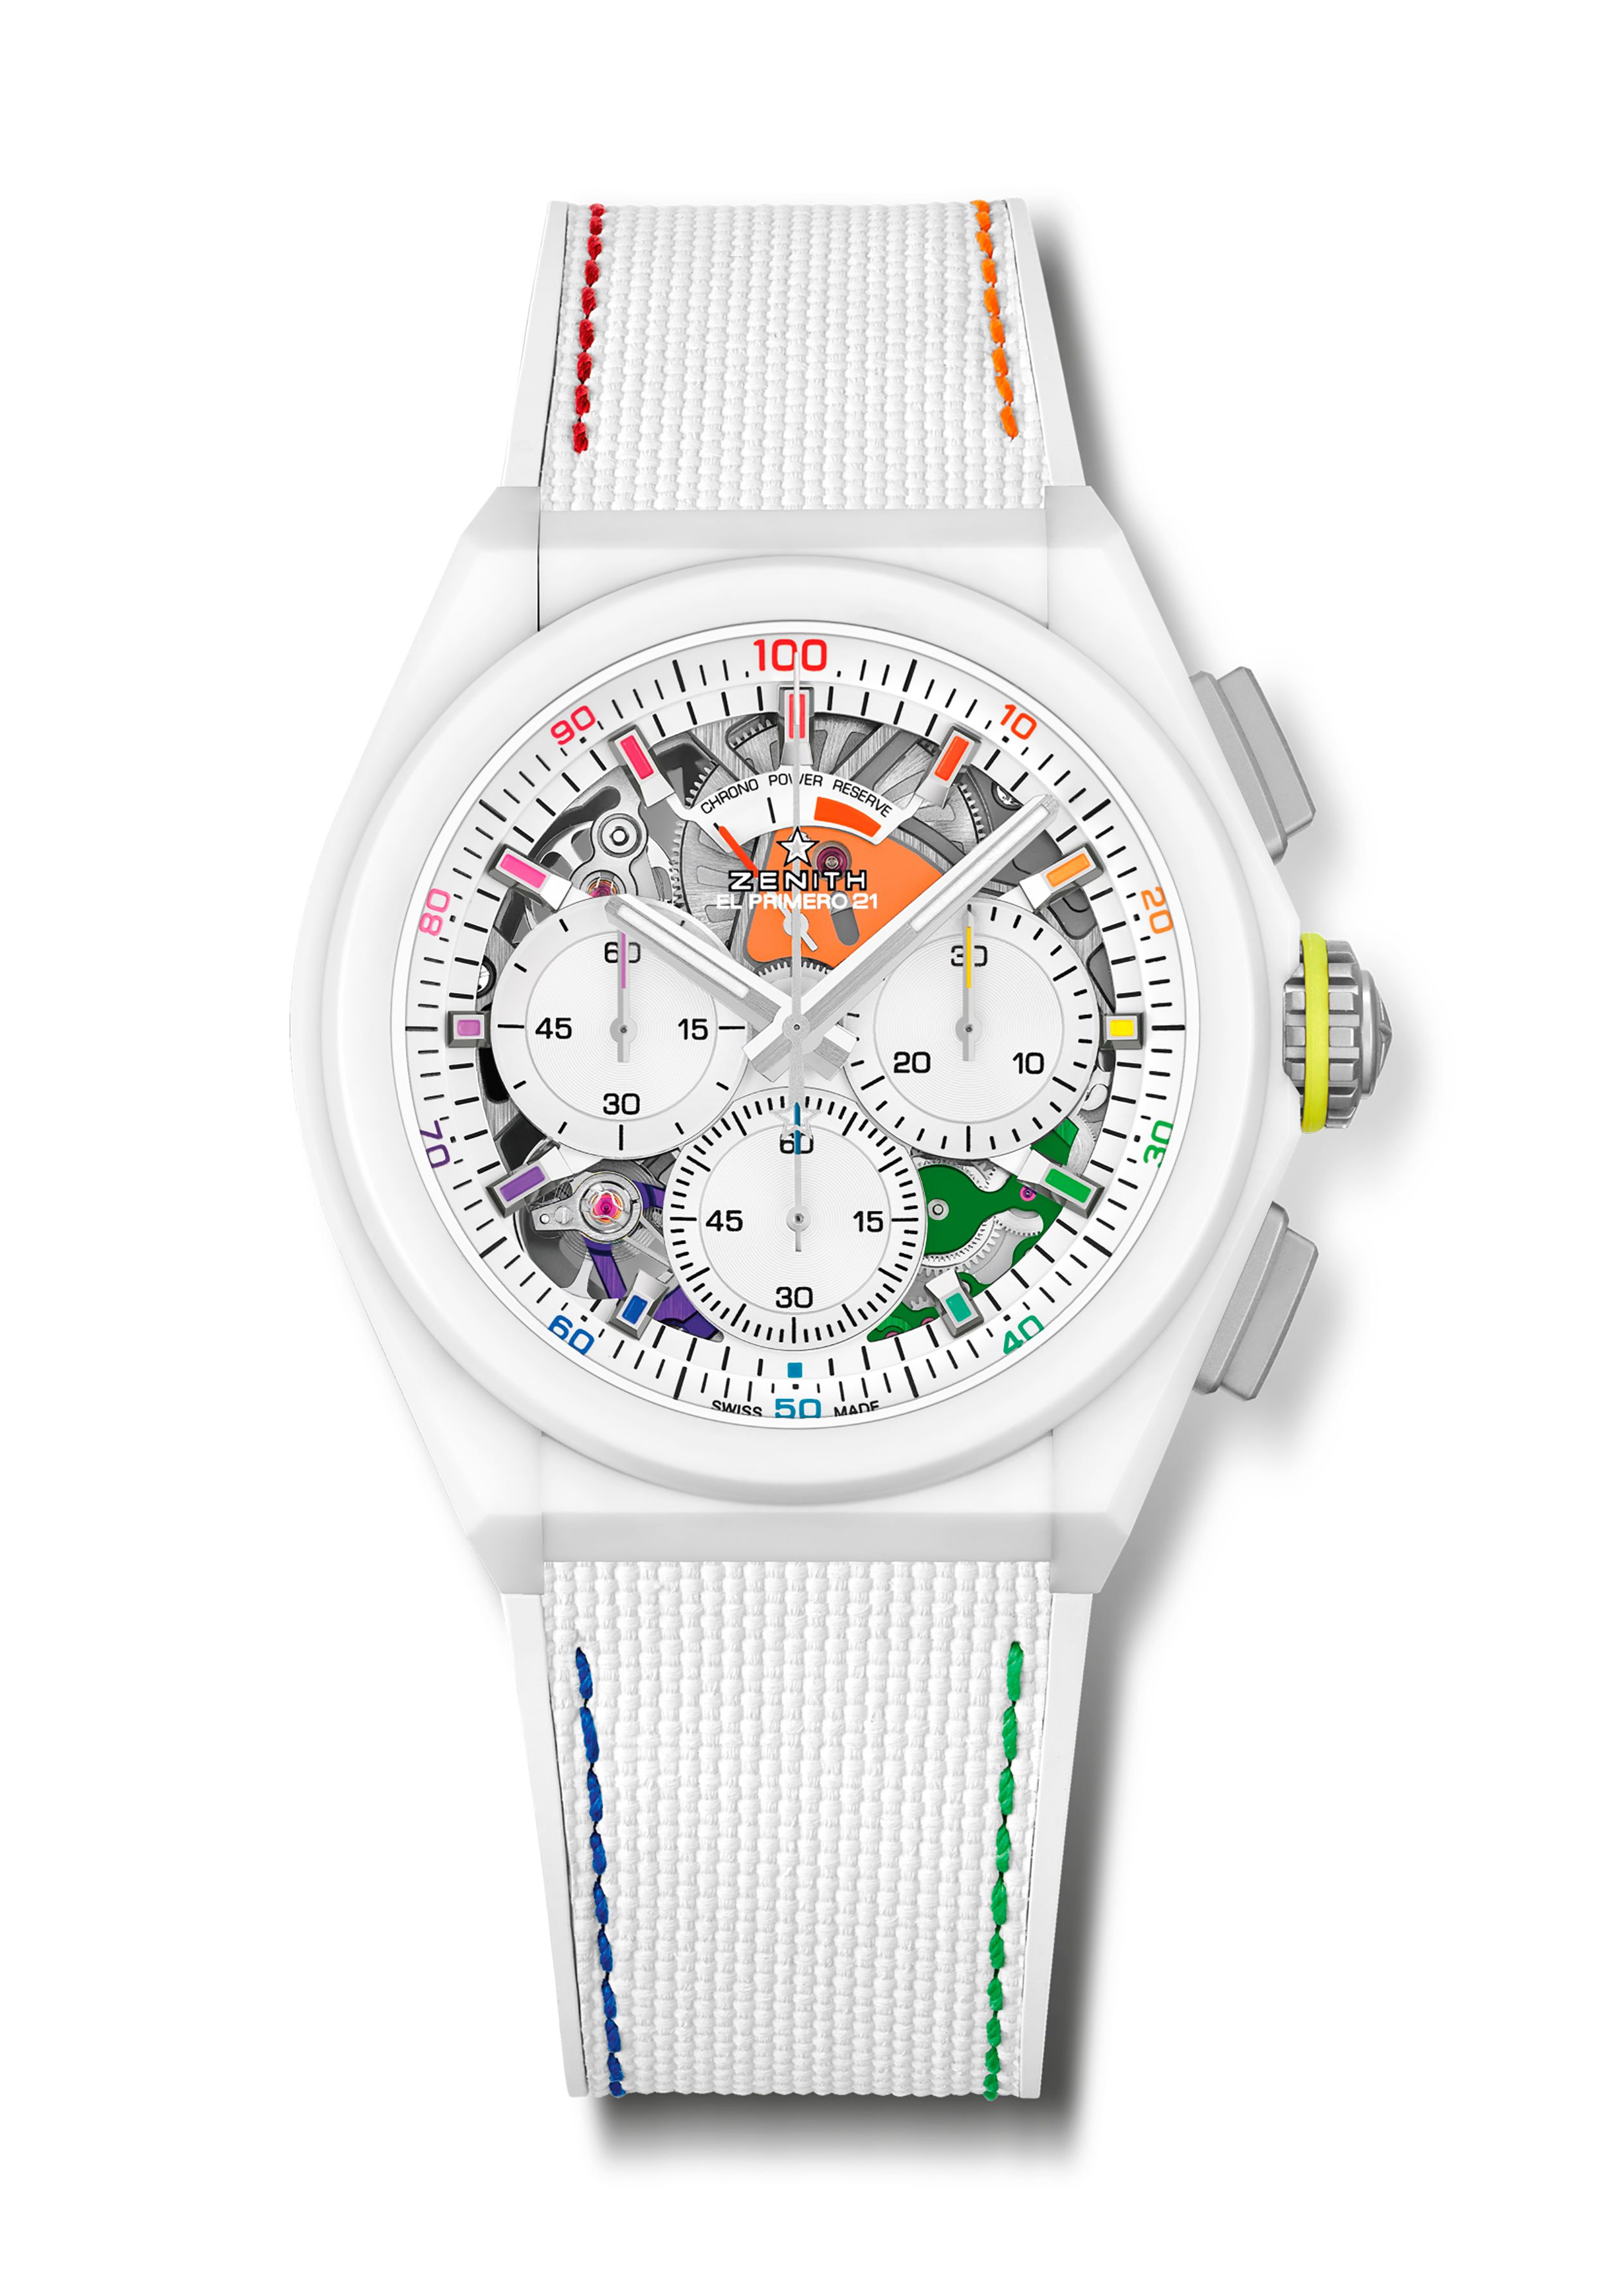 Relojes color blanco • El especialista en relojes •